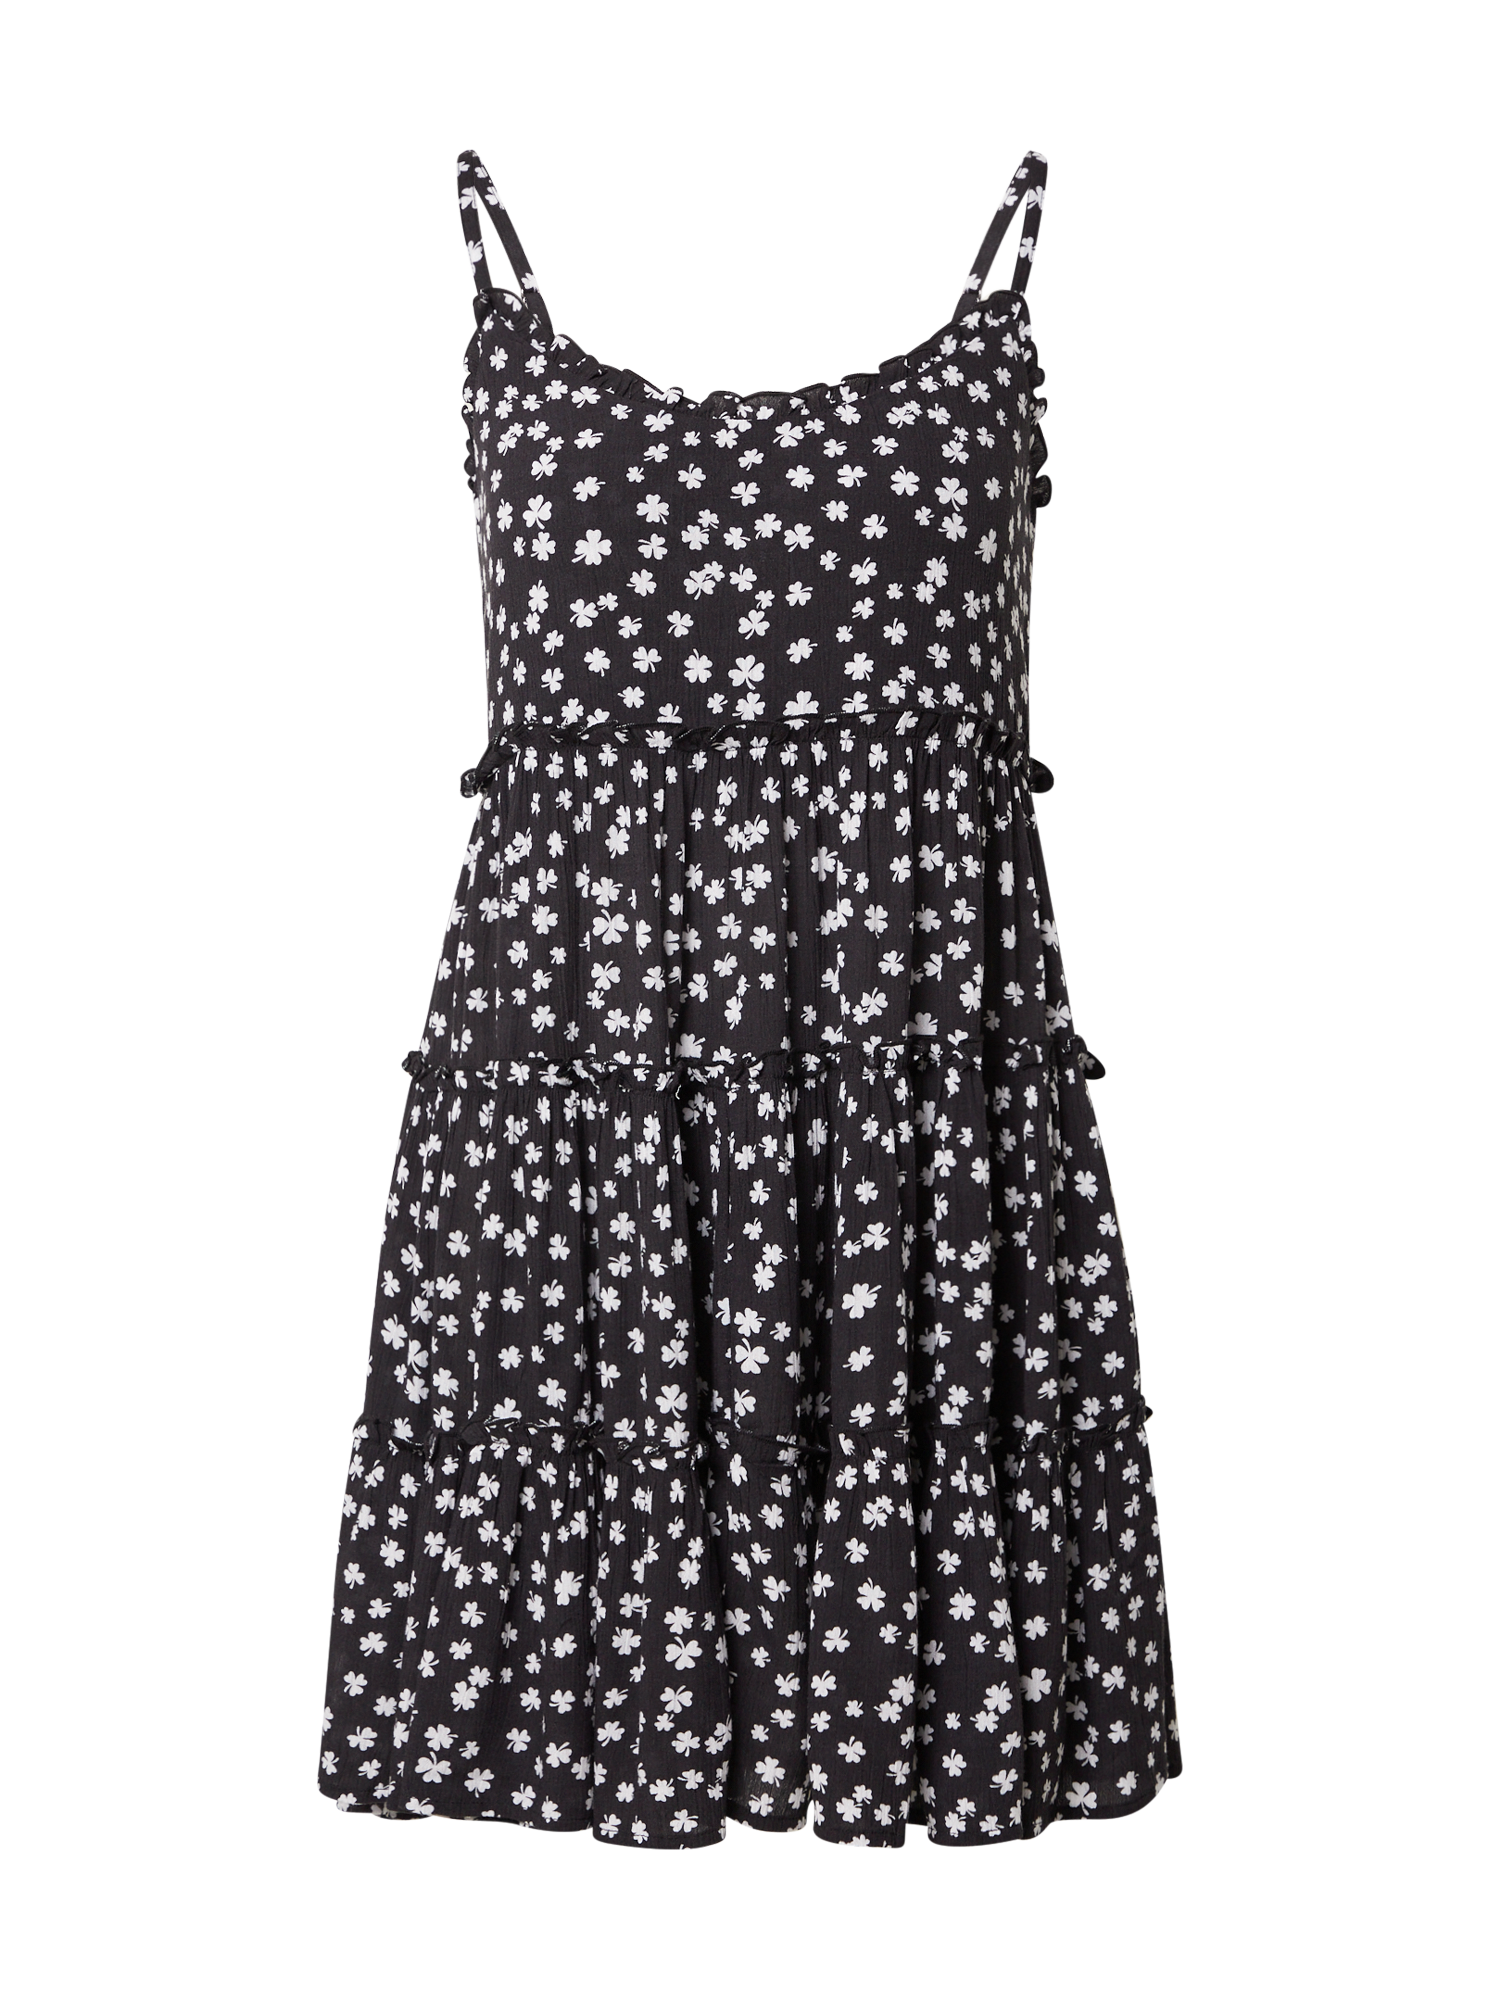 Odzież Kobiety  Sukienka Mathilda w kolorze Czarnym 